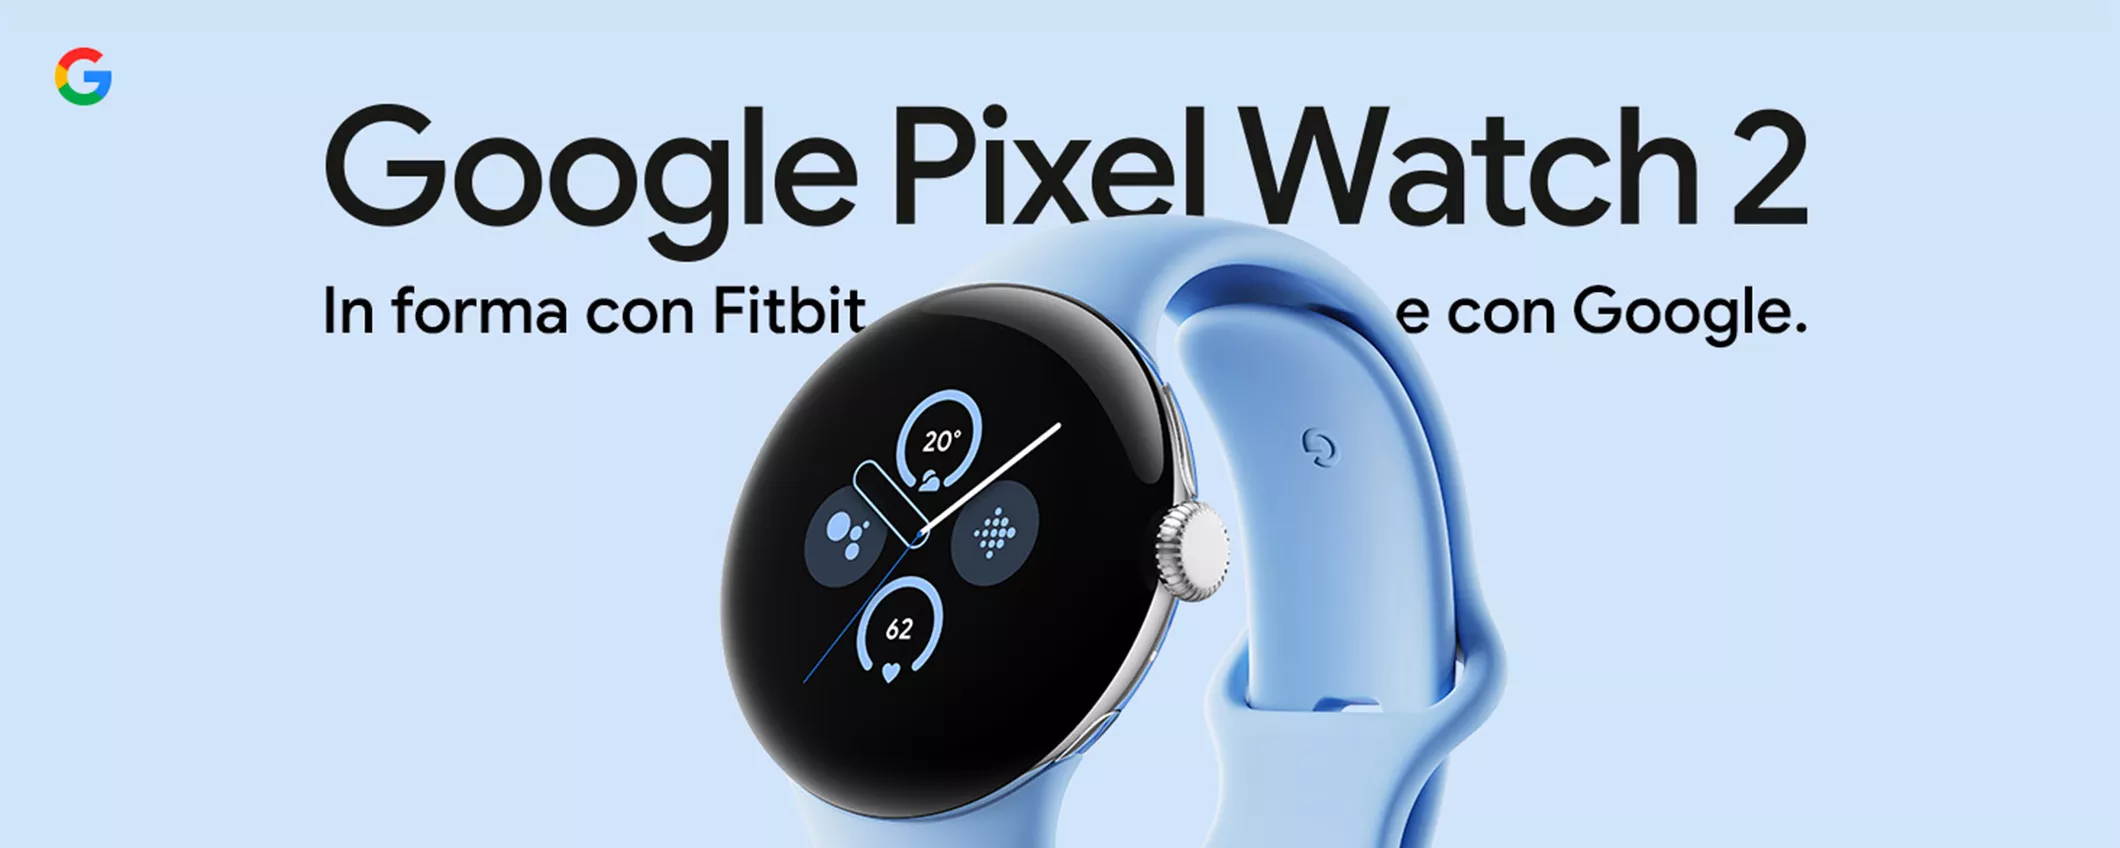 Tecnologia e stile a portata di polso con il Google Pixel Watch 2 in SUPER SCONTO